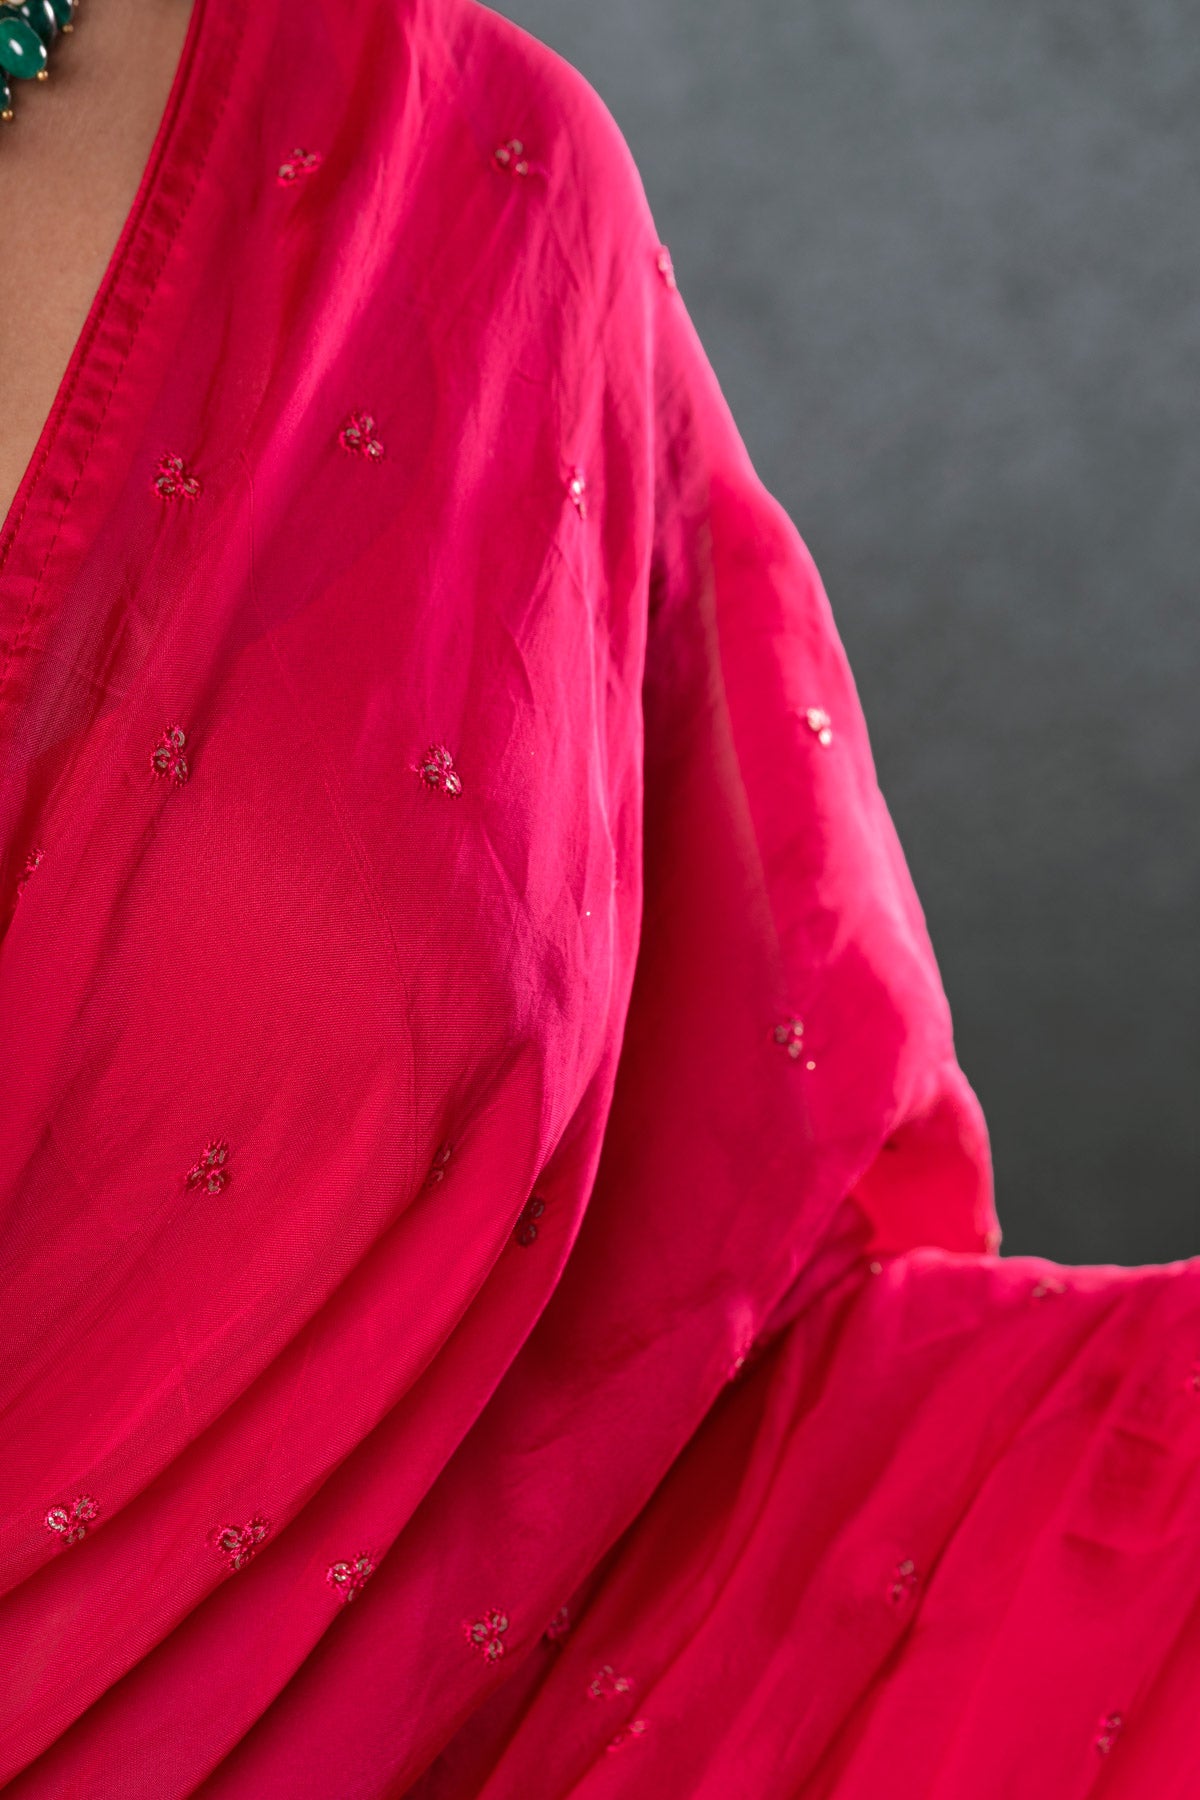 Rani Pink Saree With Blouse